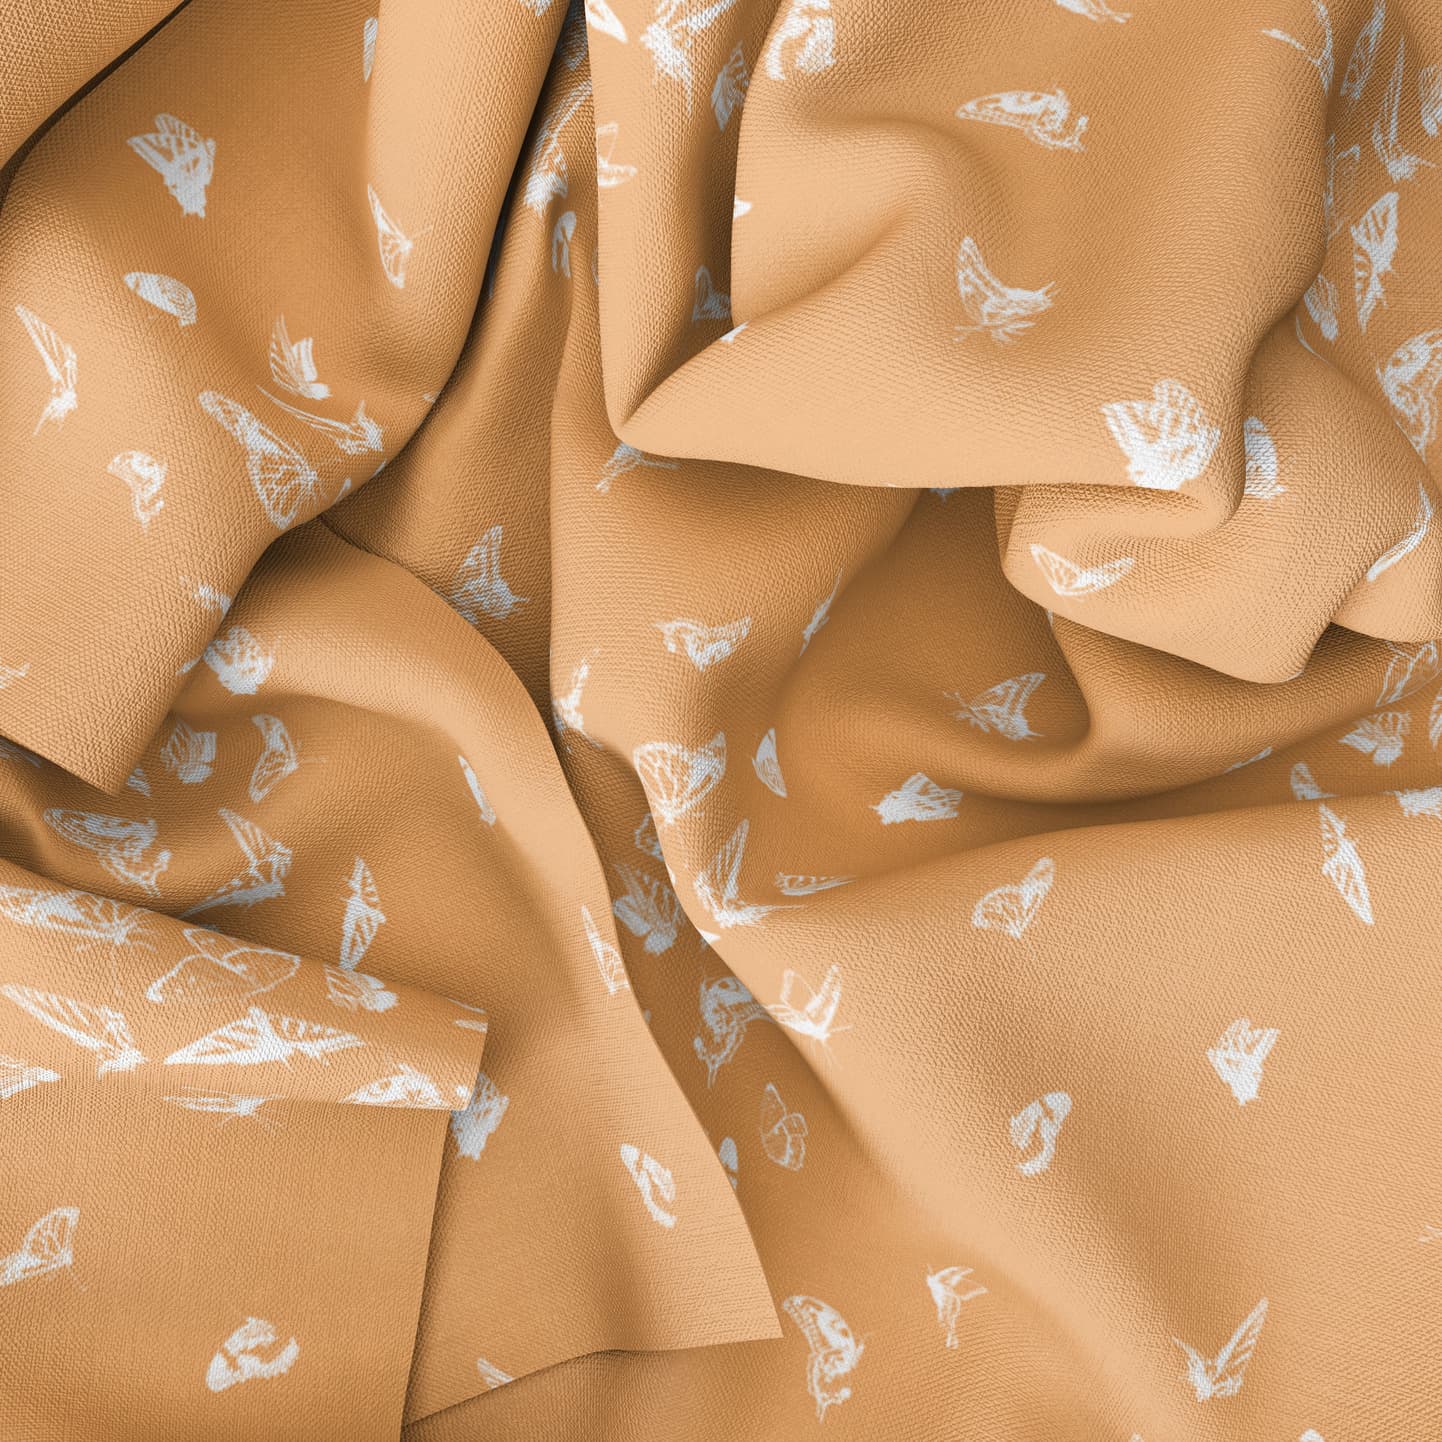 Butterfly Dance Reverse Fabric Drape in Sherbet Orange